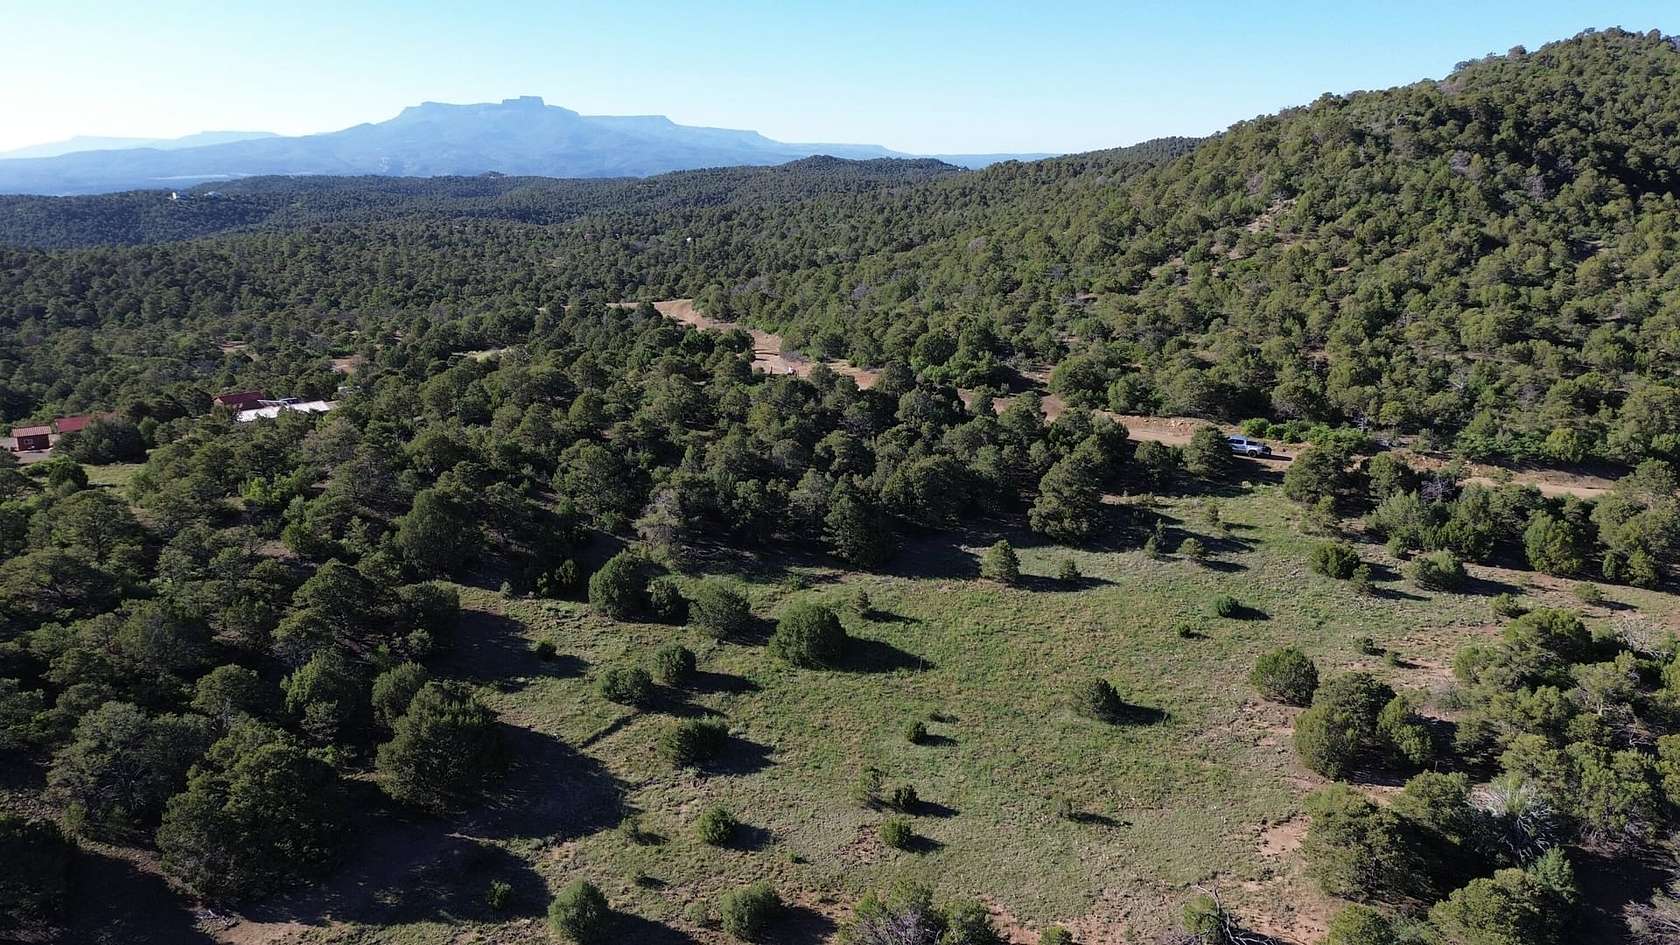 80 Acres of Recreational Land for Sale in Trinidad, Colorado